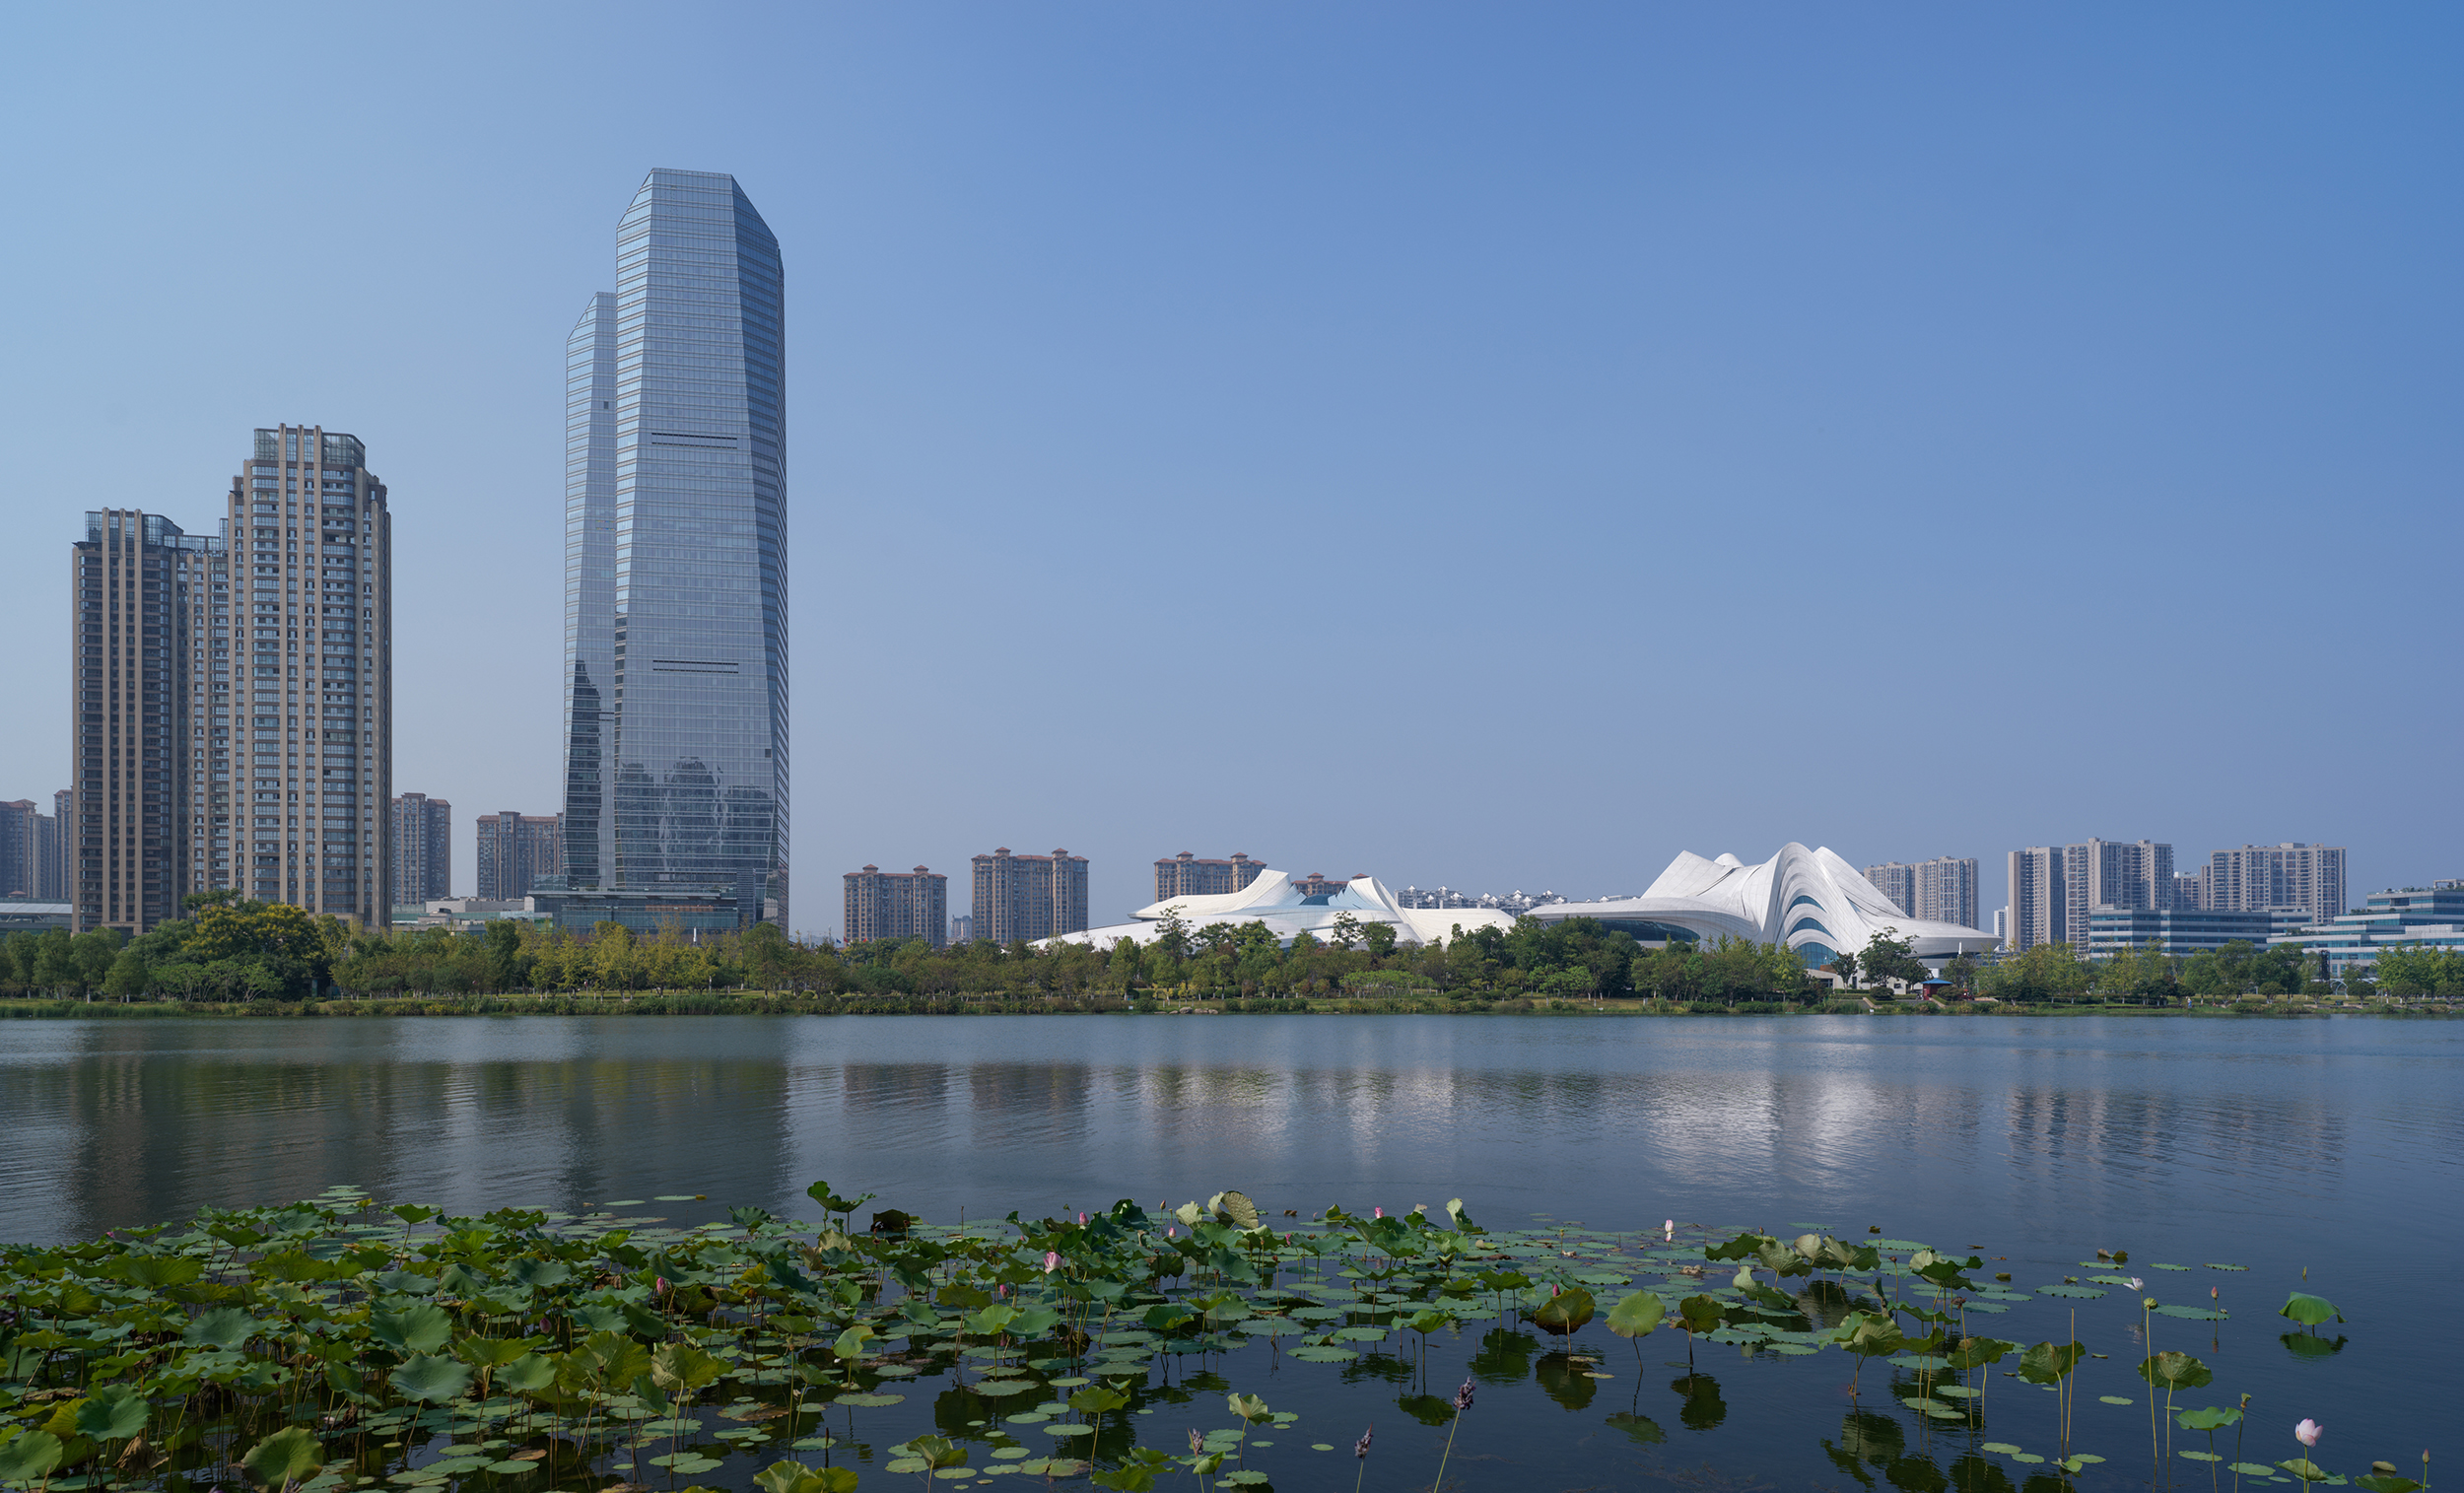 New China culture Center by Zaha Hadid Architects